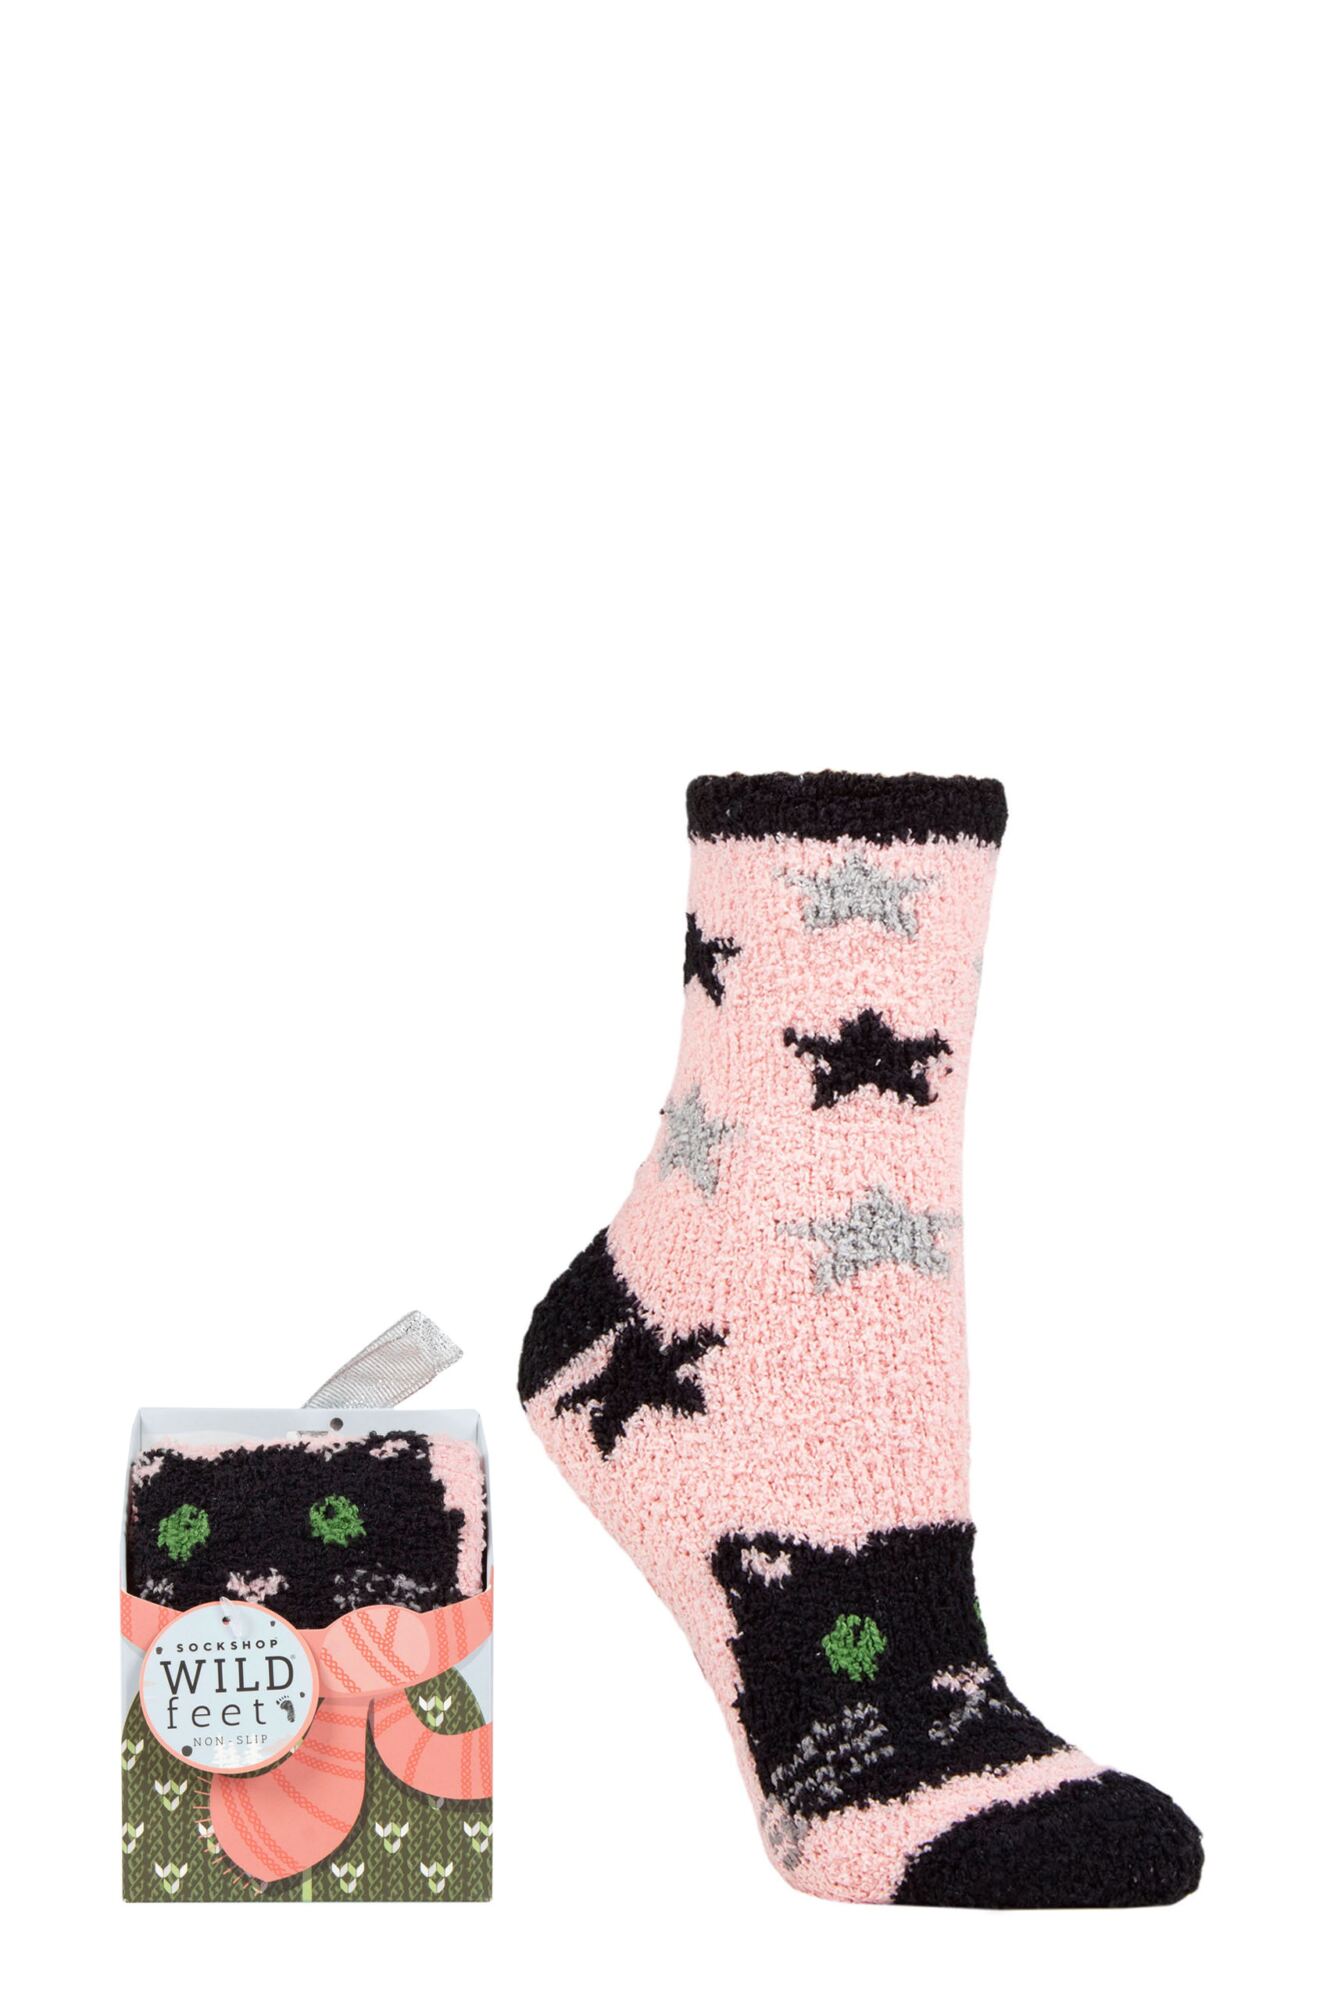 Ladies 1 Pair SOCKSHOP Wild Feet Gift Boxed Fluffy Slipper Socks